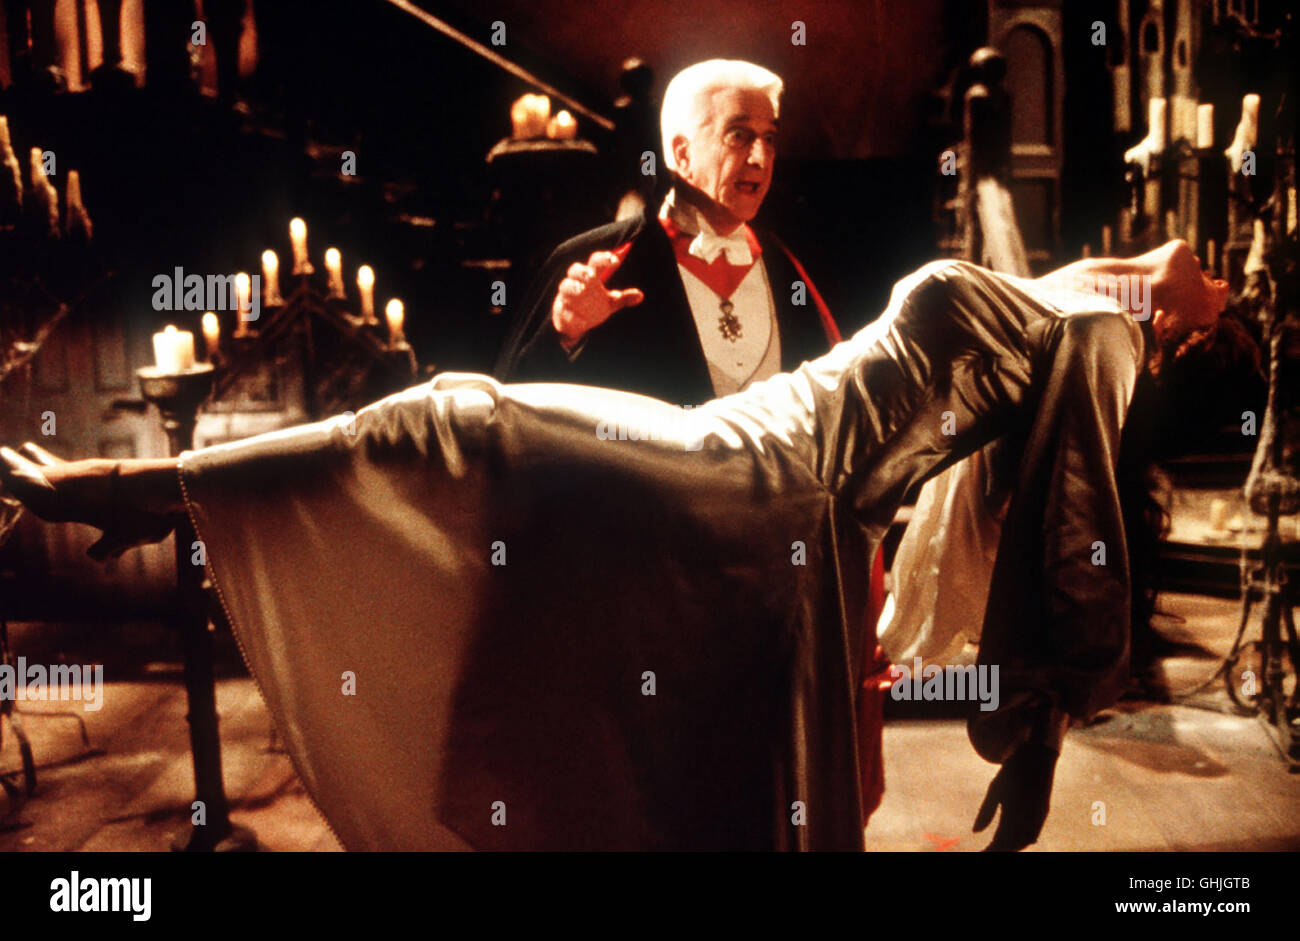 Mel Brooks, der erfolgreichste Lästerer der Filmgeschichte, nimmt sich diesmal des Vampirgenres an. Heraus kommt die witzigste Version der klassischen Dracula-Geschichte mit einem umwerfenden Leslie Nielsen als trotteliger Blutsauger, der es auf schwanenhafte Damenhälse abgesehen hat. Szene mit LESLIE NIELSEN Regie: Mel Brooks aka. Dracula - Dead And Loving It Stock Photo